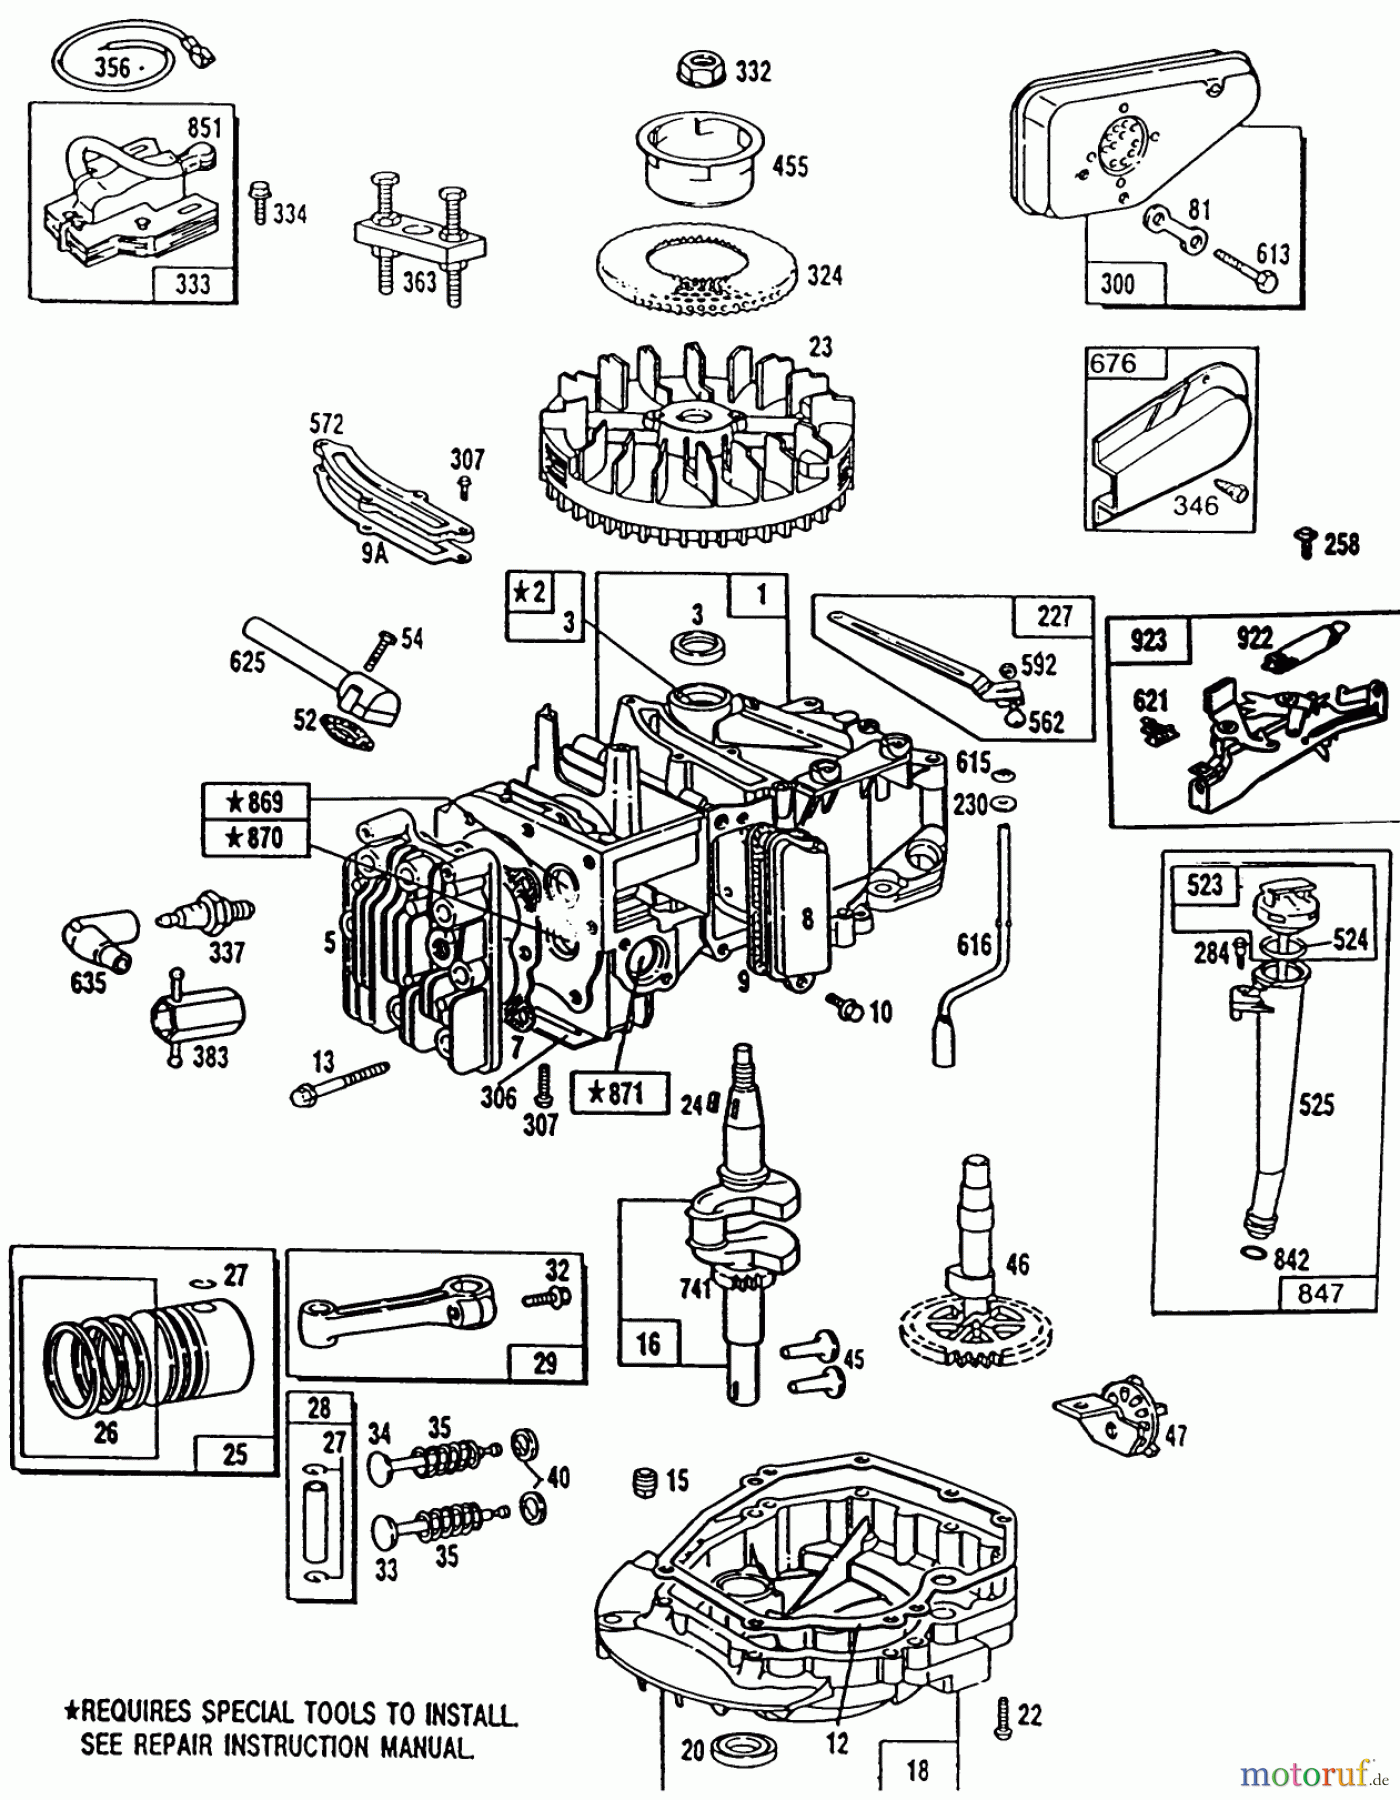  Toro Neu Mowers, Walk-Behind Seite 1 20561 - Toro Lawnmower, 1990 (0000001-0999999) ENGINE MODEL 124702-3115-01 #2